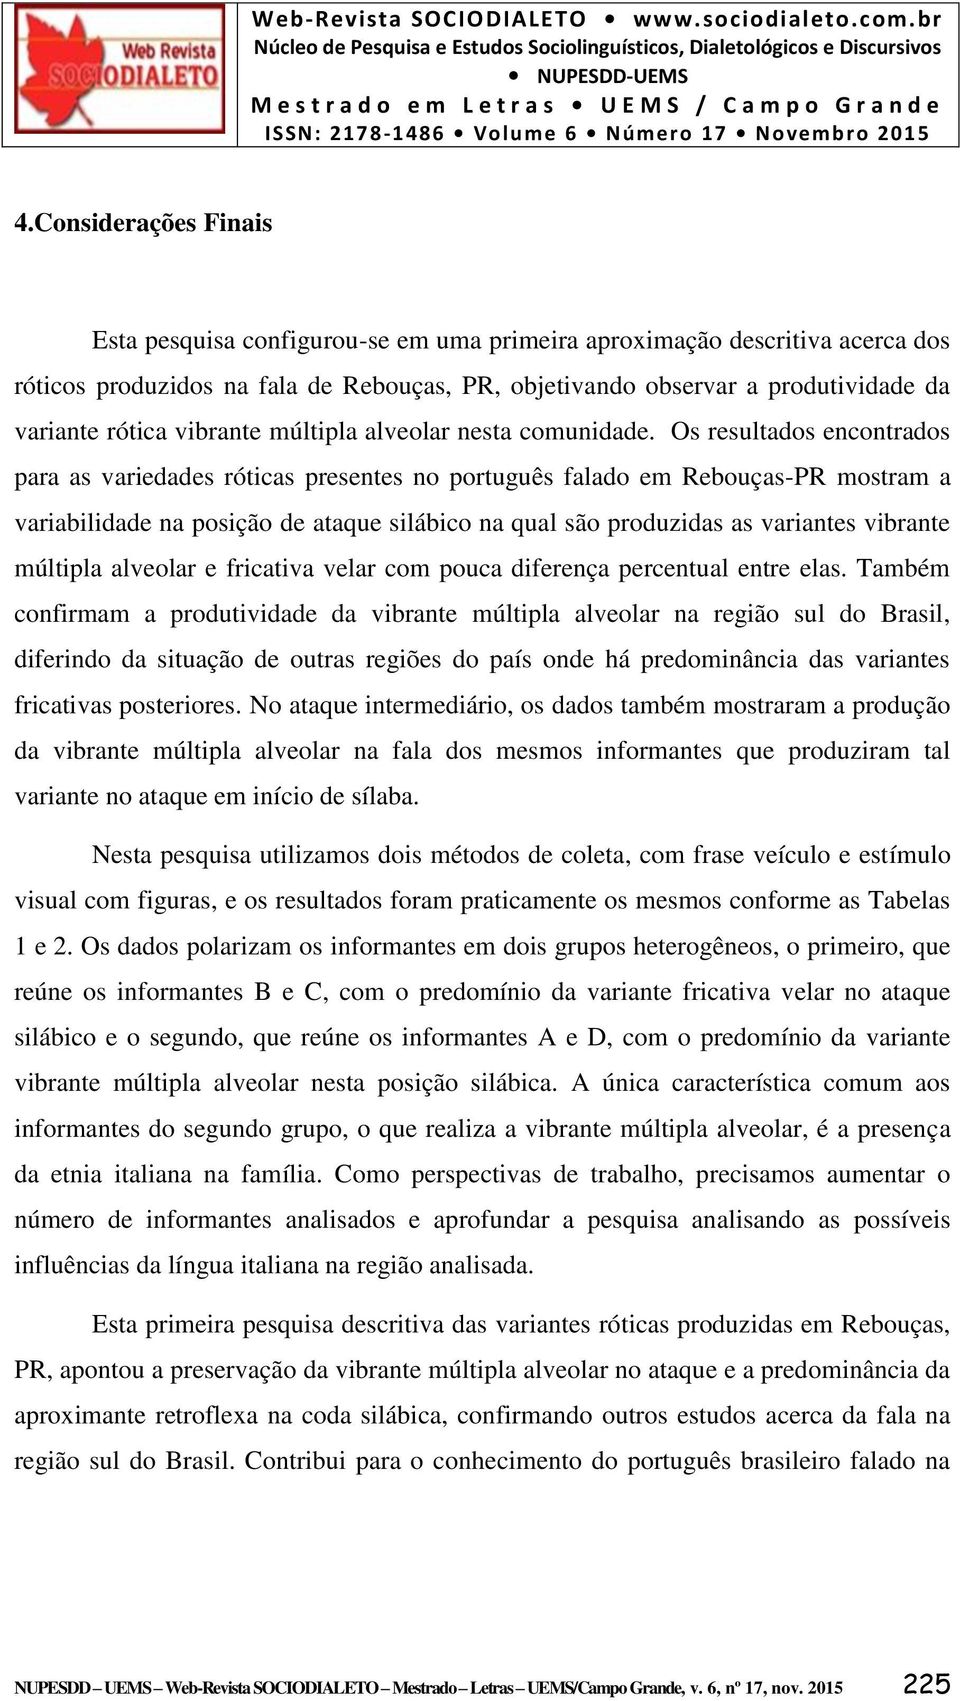 Os resultados encontrados para as variedades róticas presentes no português falado em Rebouças-PR mostram a variabilidade na posição de ataque silábico na qual são produzidas as variantes vibrante